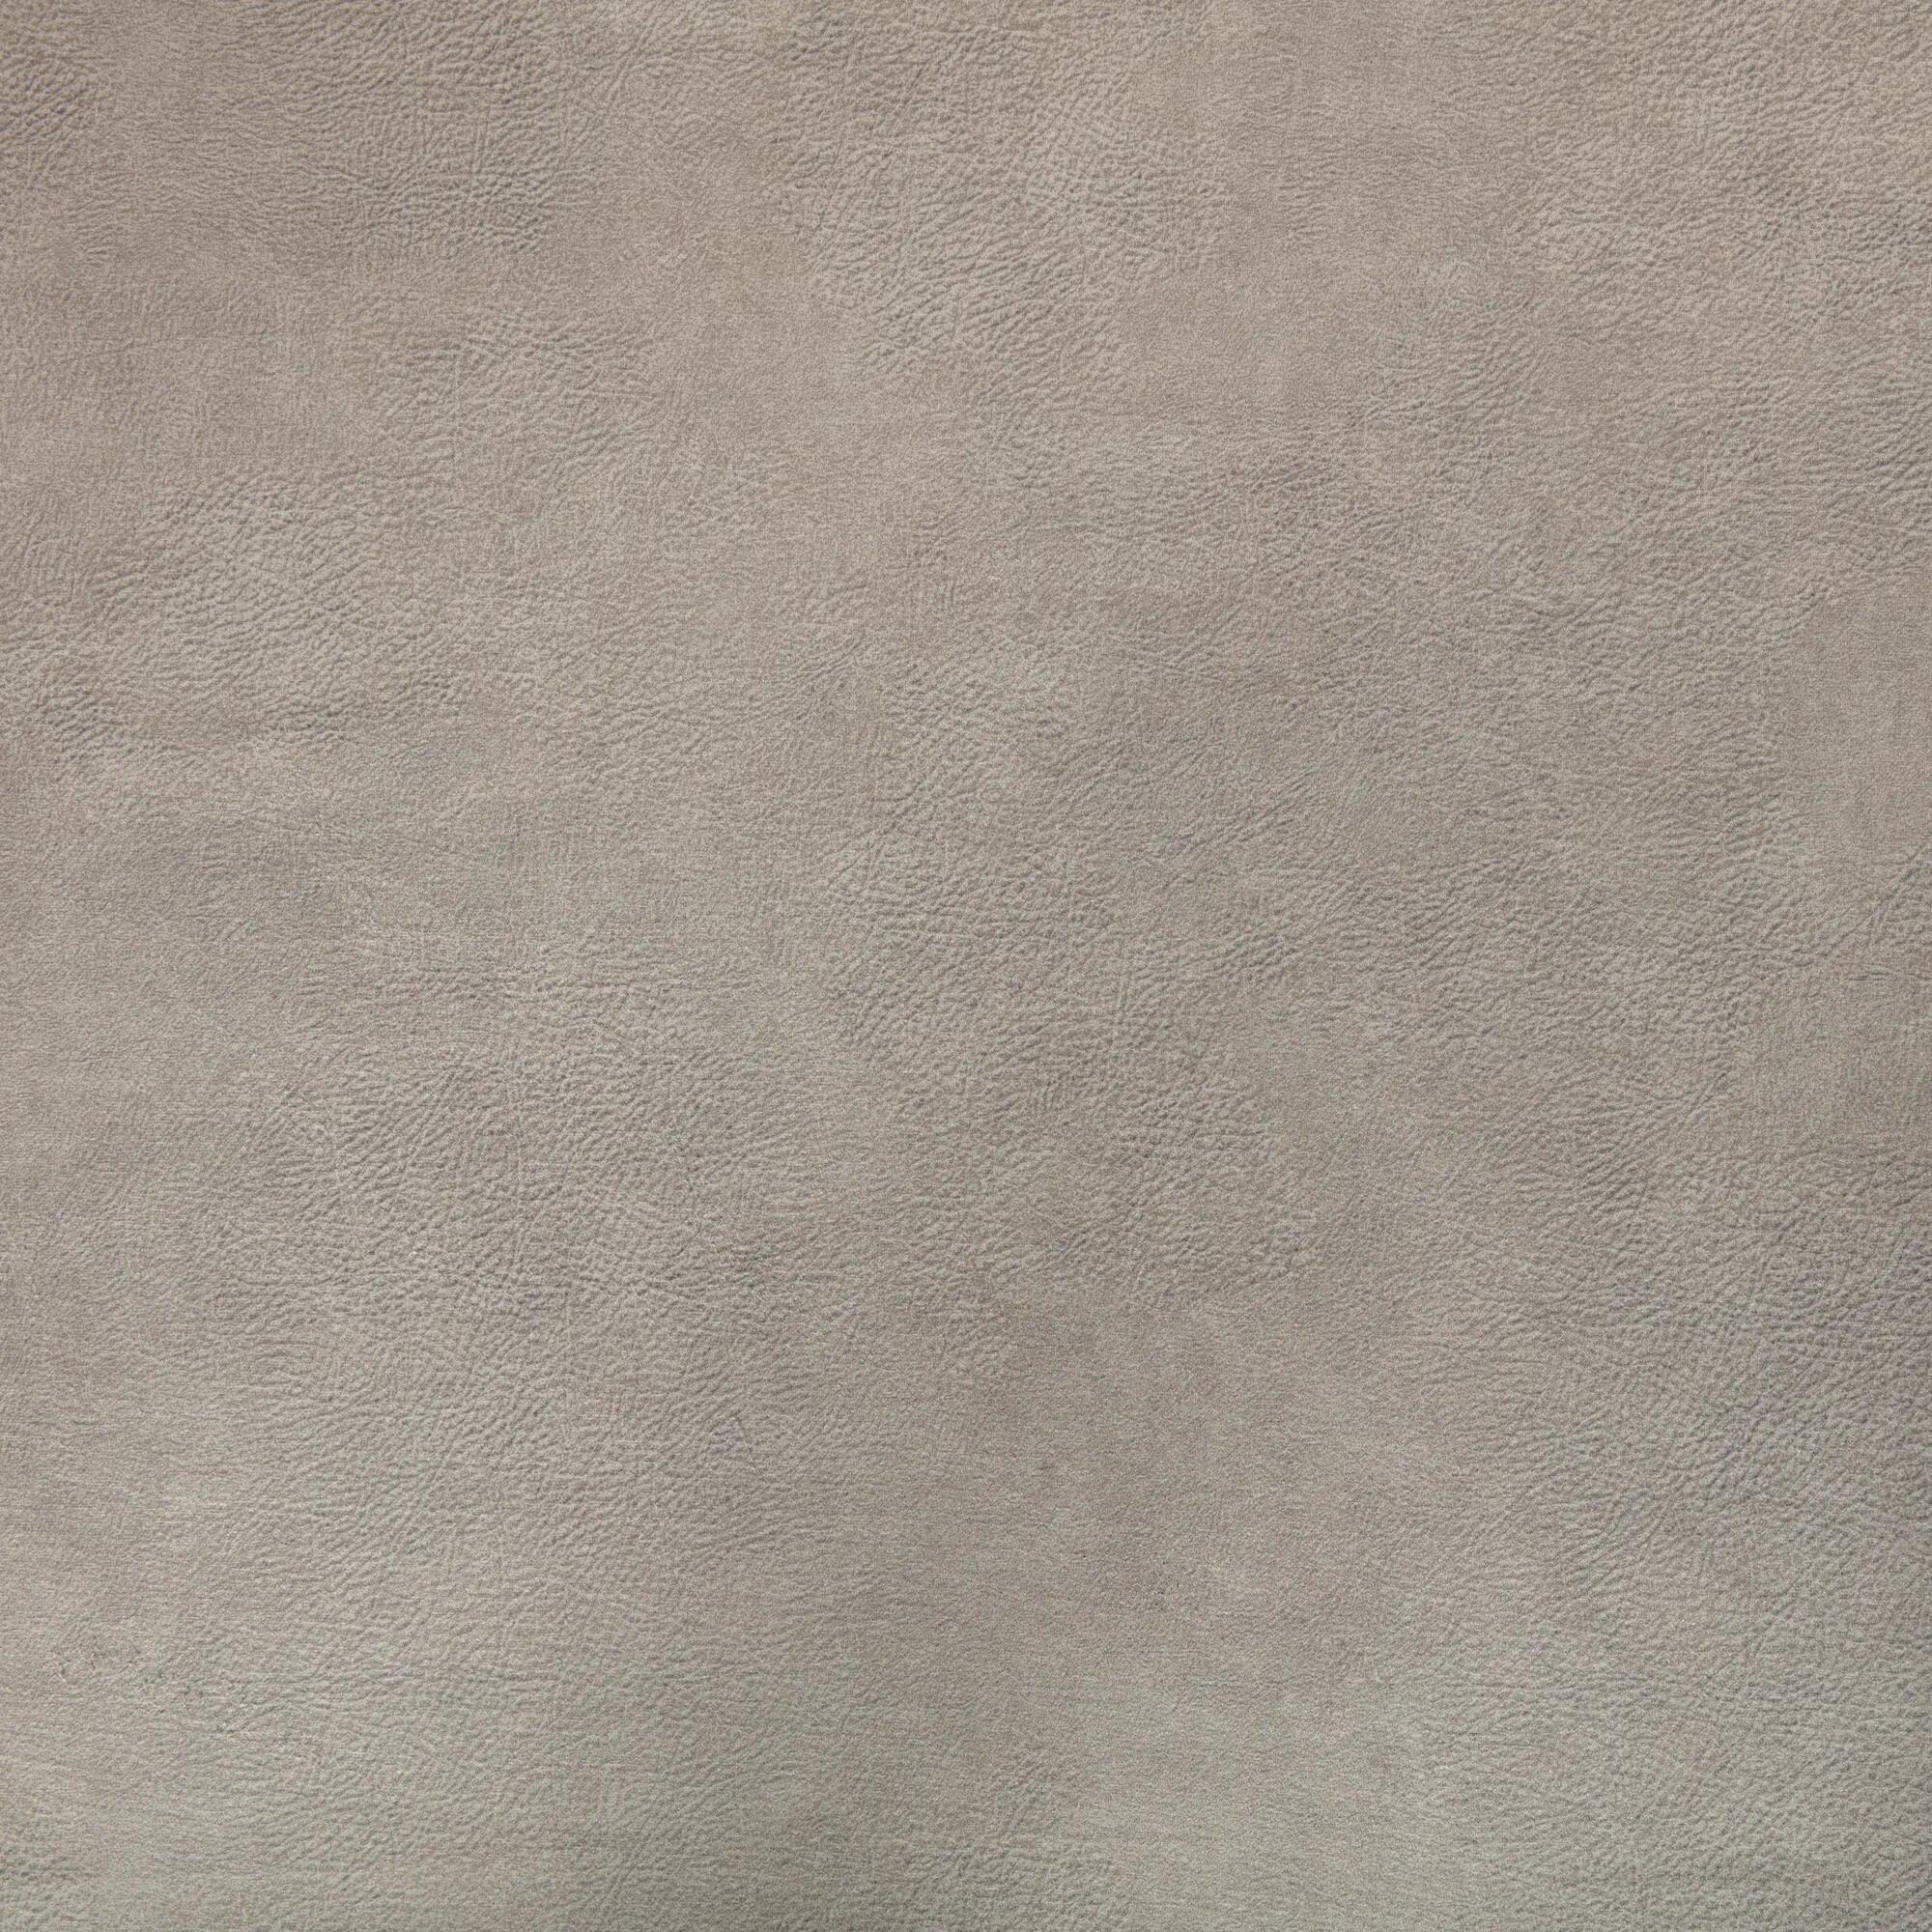 Tela al corte tapicería imitación piel vison gris oscuro ancho 140 cm